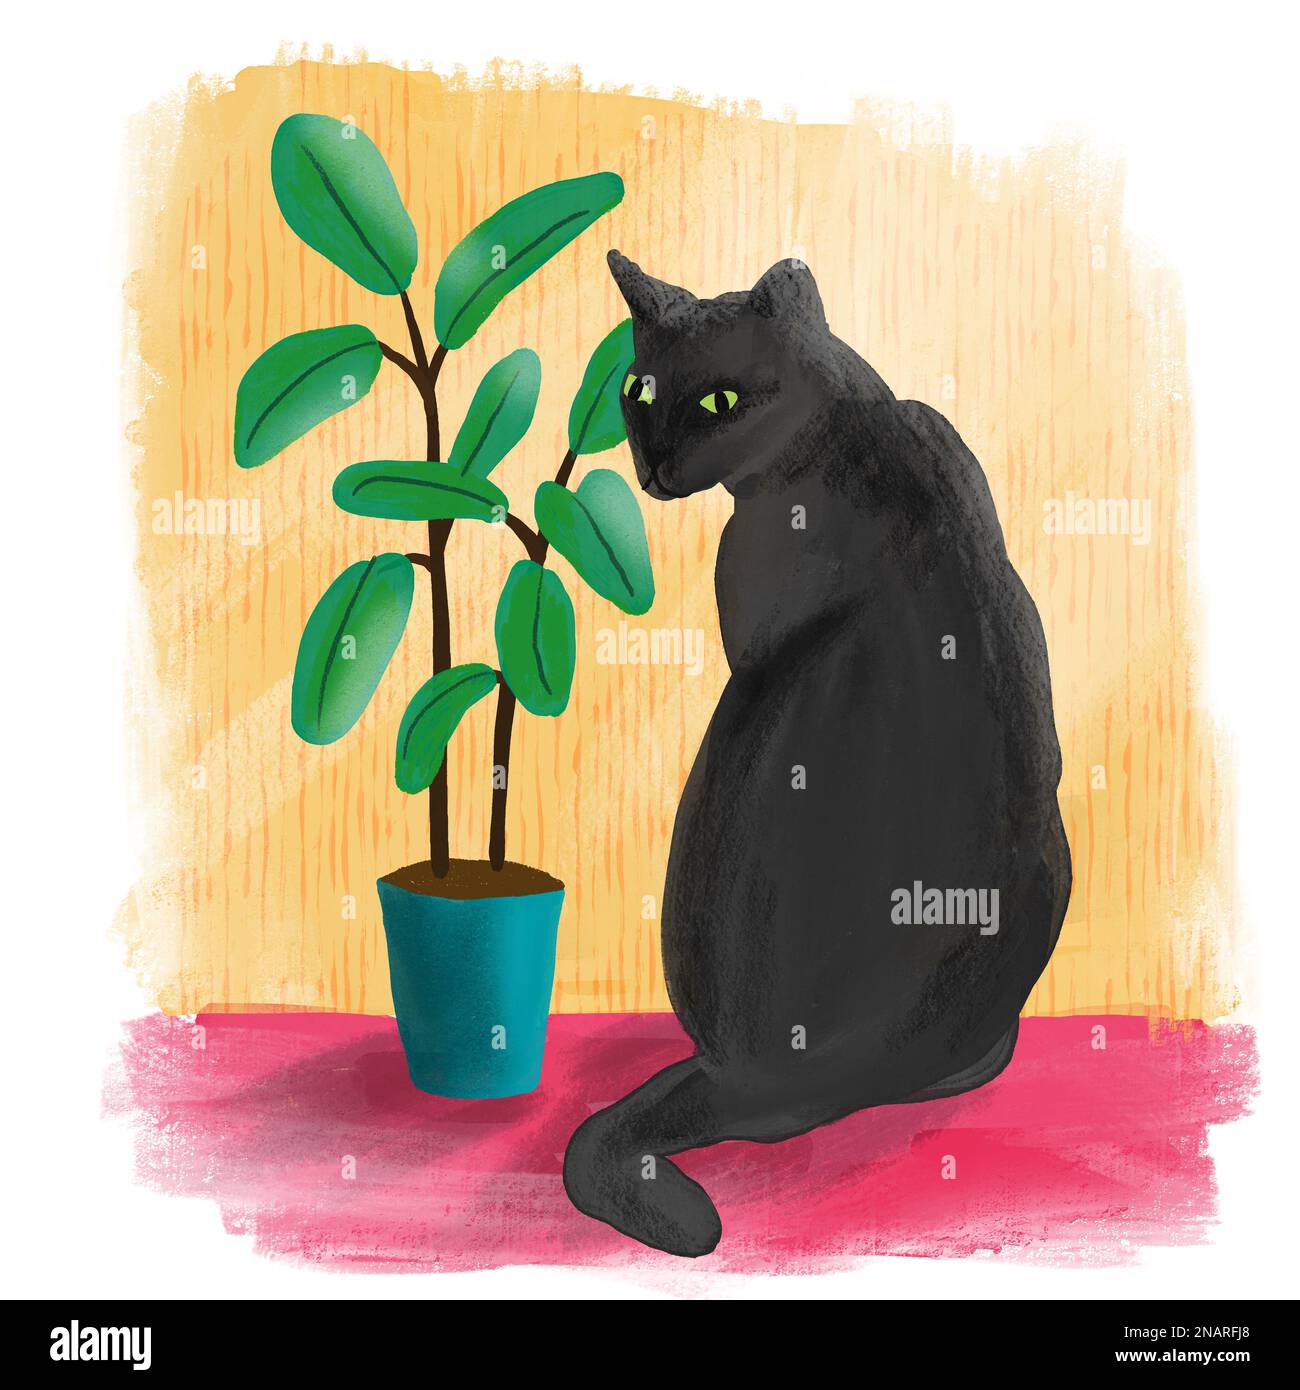 Handgezeichnete Andeutung mit schwarzer Katze und Blüten von Hauspflanze Ficus auf farbenfrohem Hintergrund. Heimtier Katze niedliches Design Posterkarte, trendige Kunst im lockeren gemalten Stil, Geschenk für Katzenliebhaber katzenmotiv Stockfoto